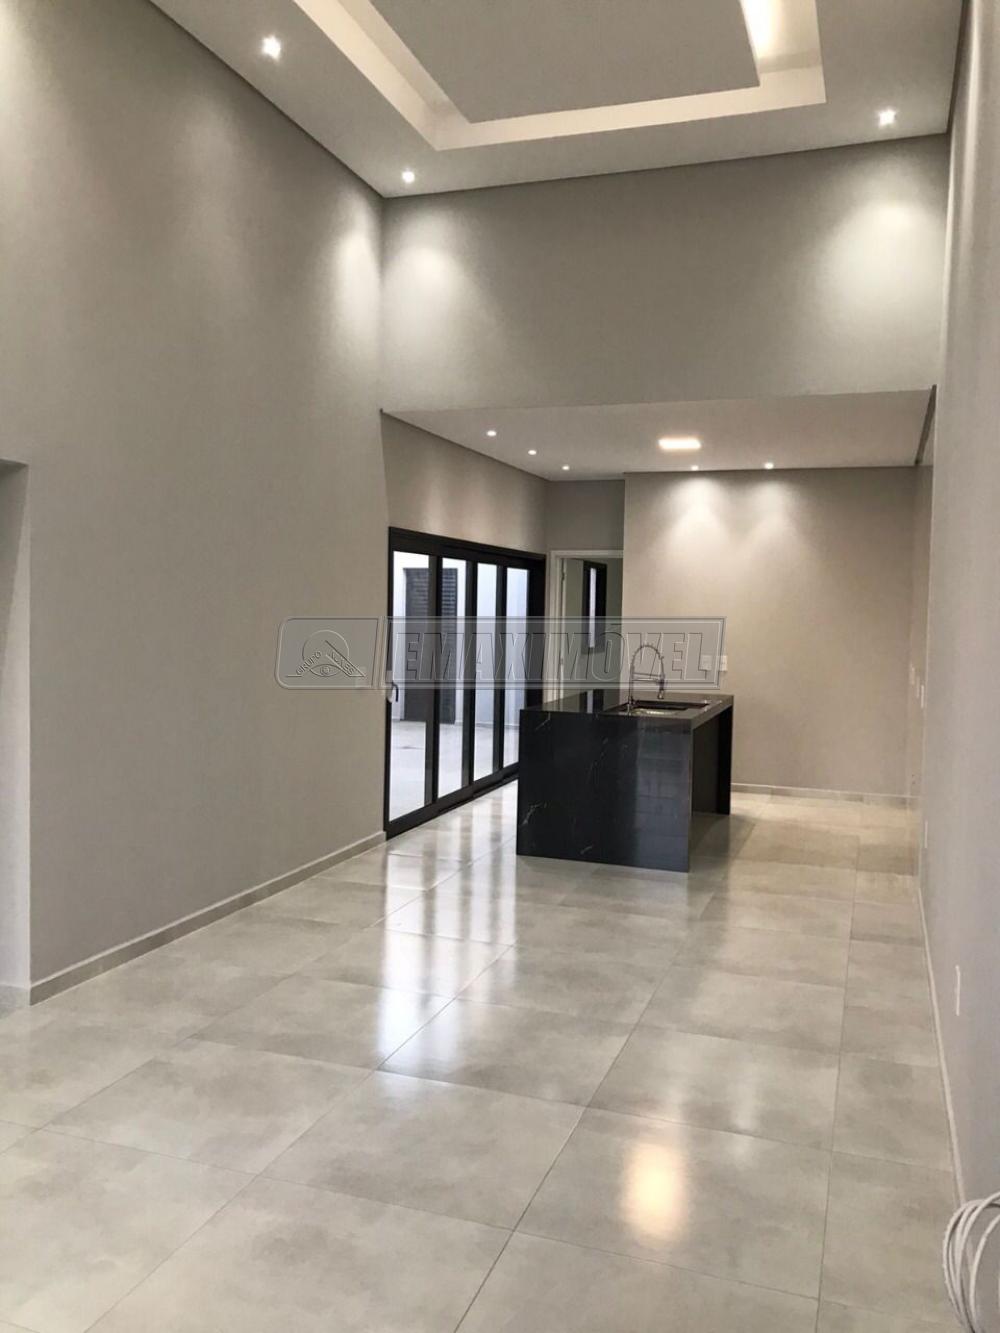 Comprar Casa / em Condomínios em Sorocaba R$ 520.000,00 - Foto 3